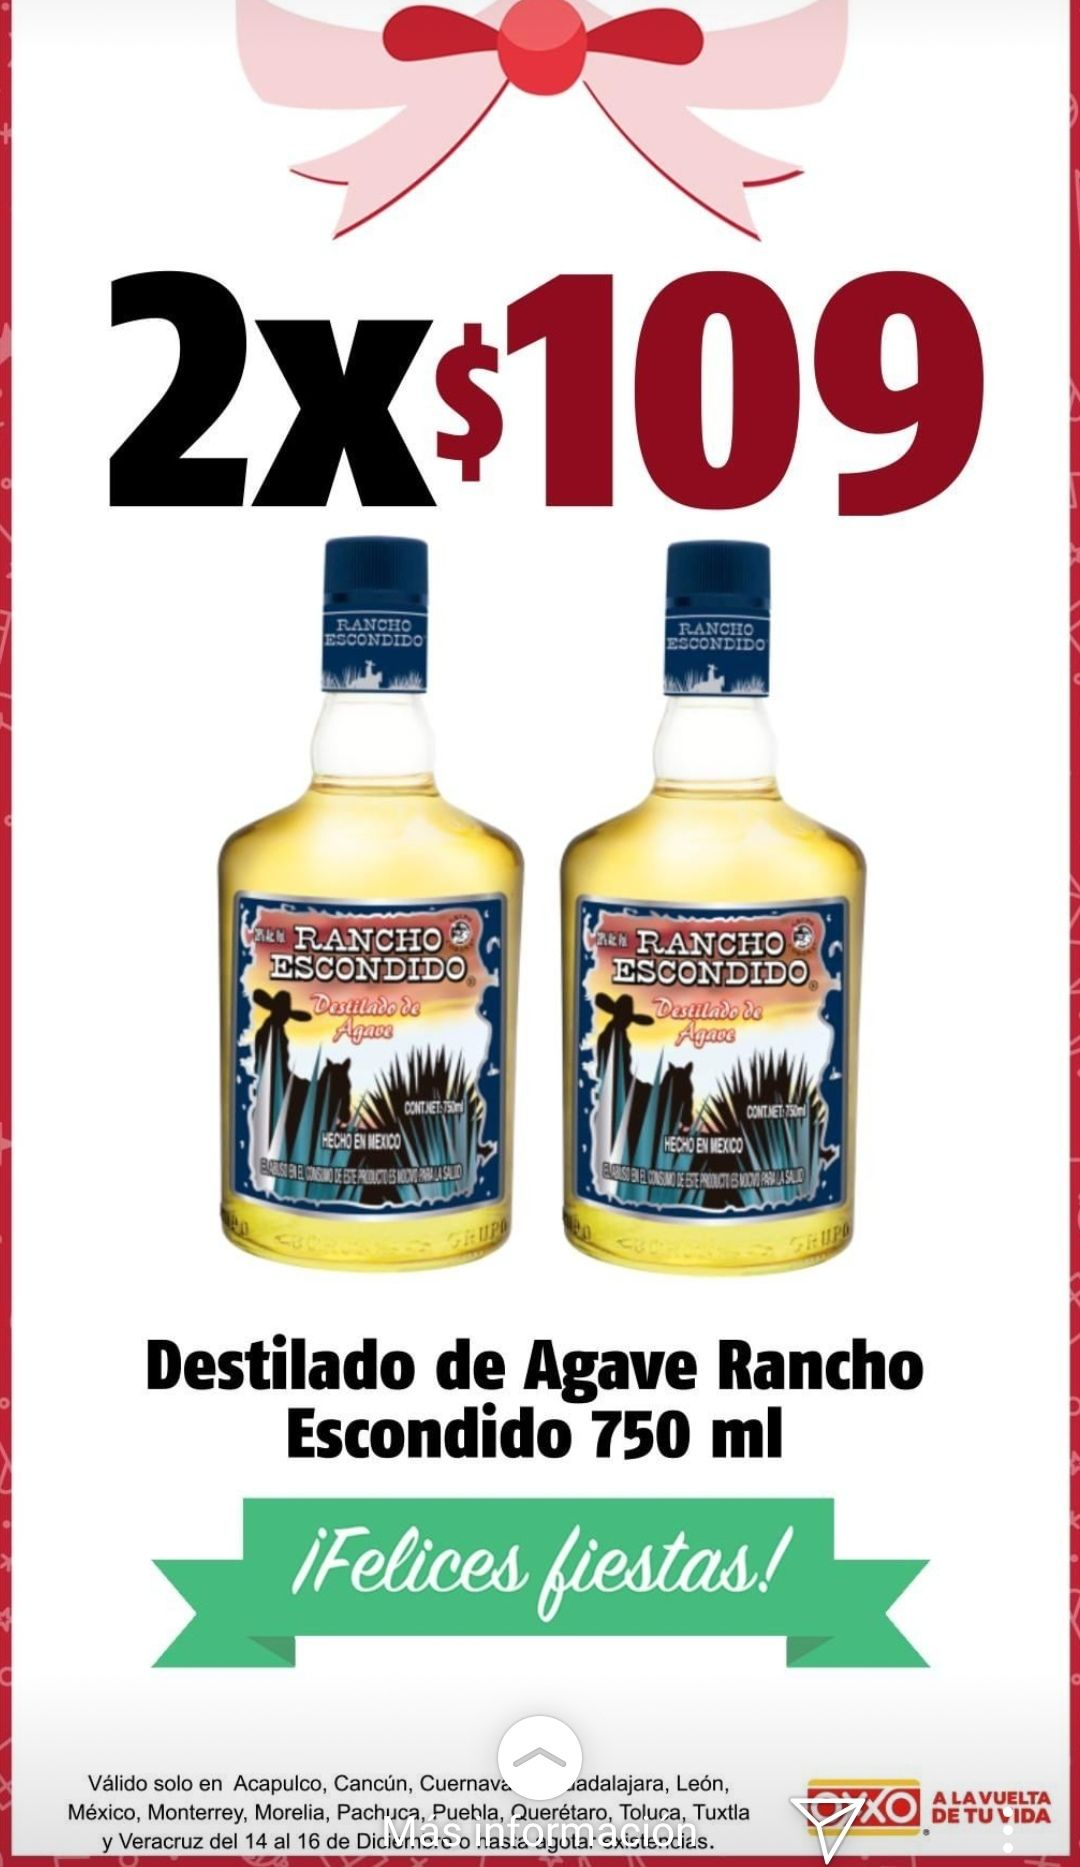 ¿Cuánto cuesta el tequila Rancho Escondido en Oxxo?